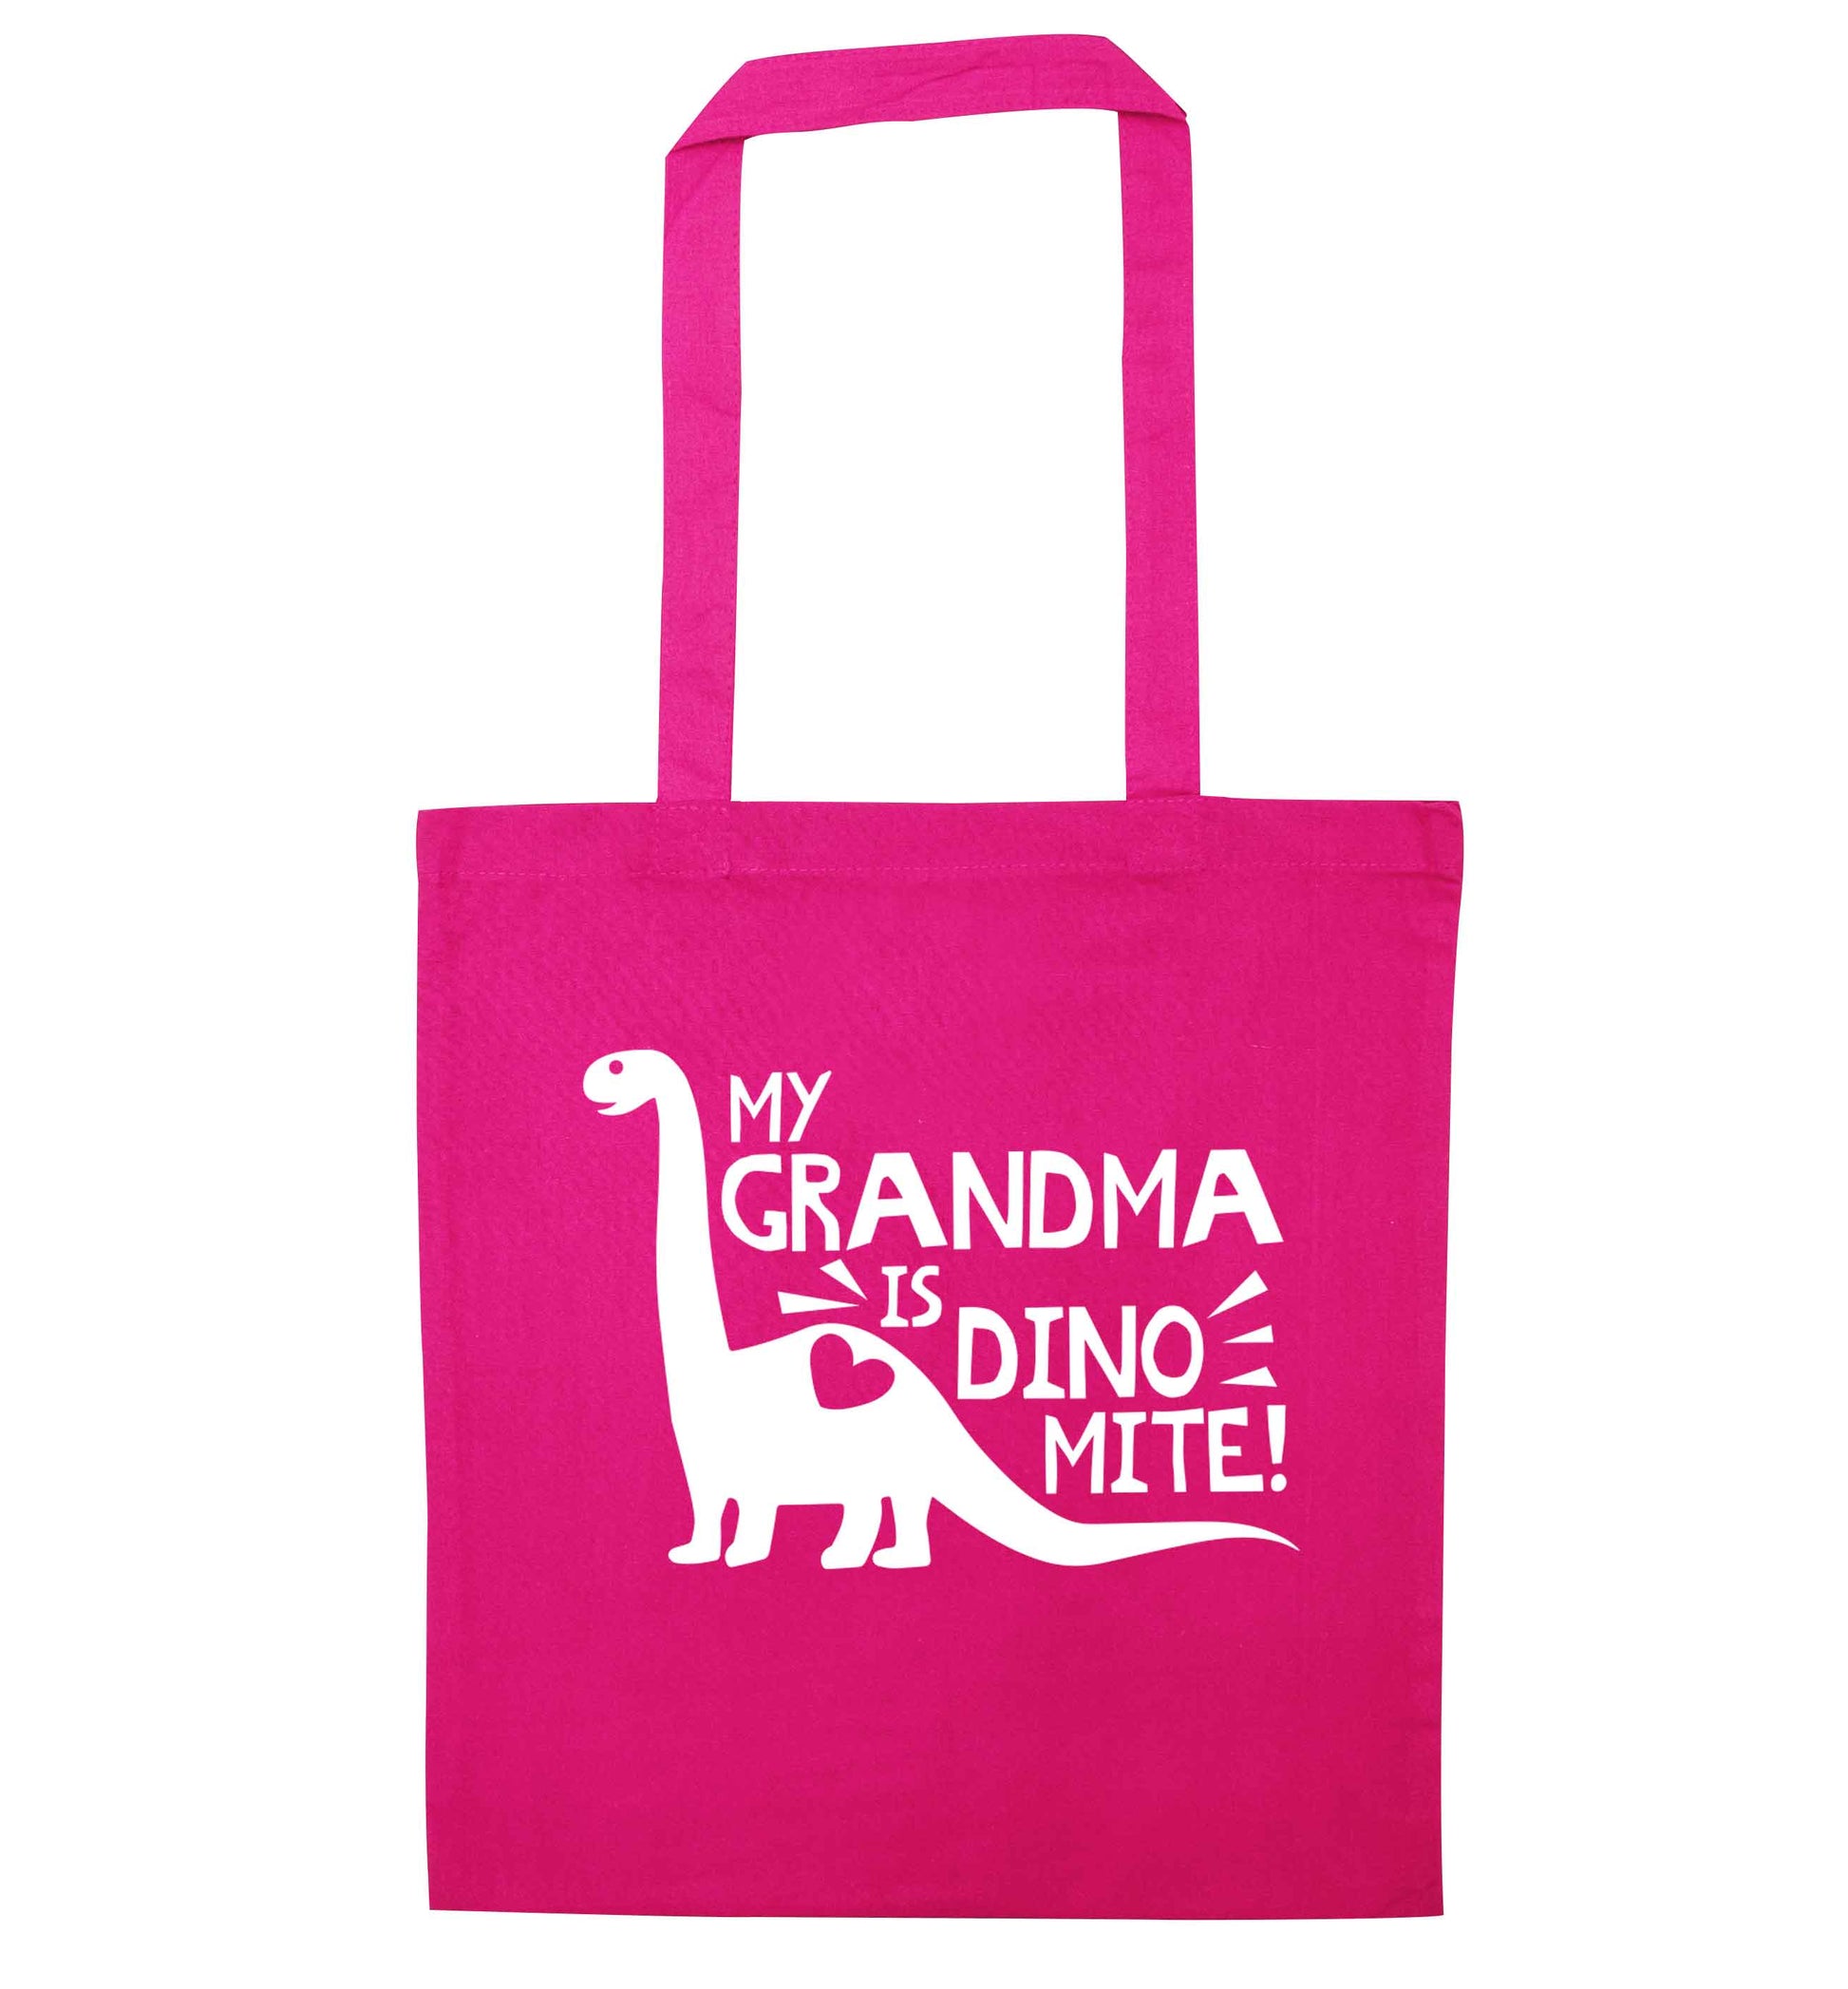 My grandma is dinomite! pink tote bag